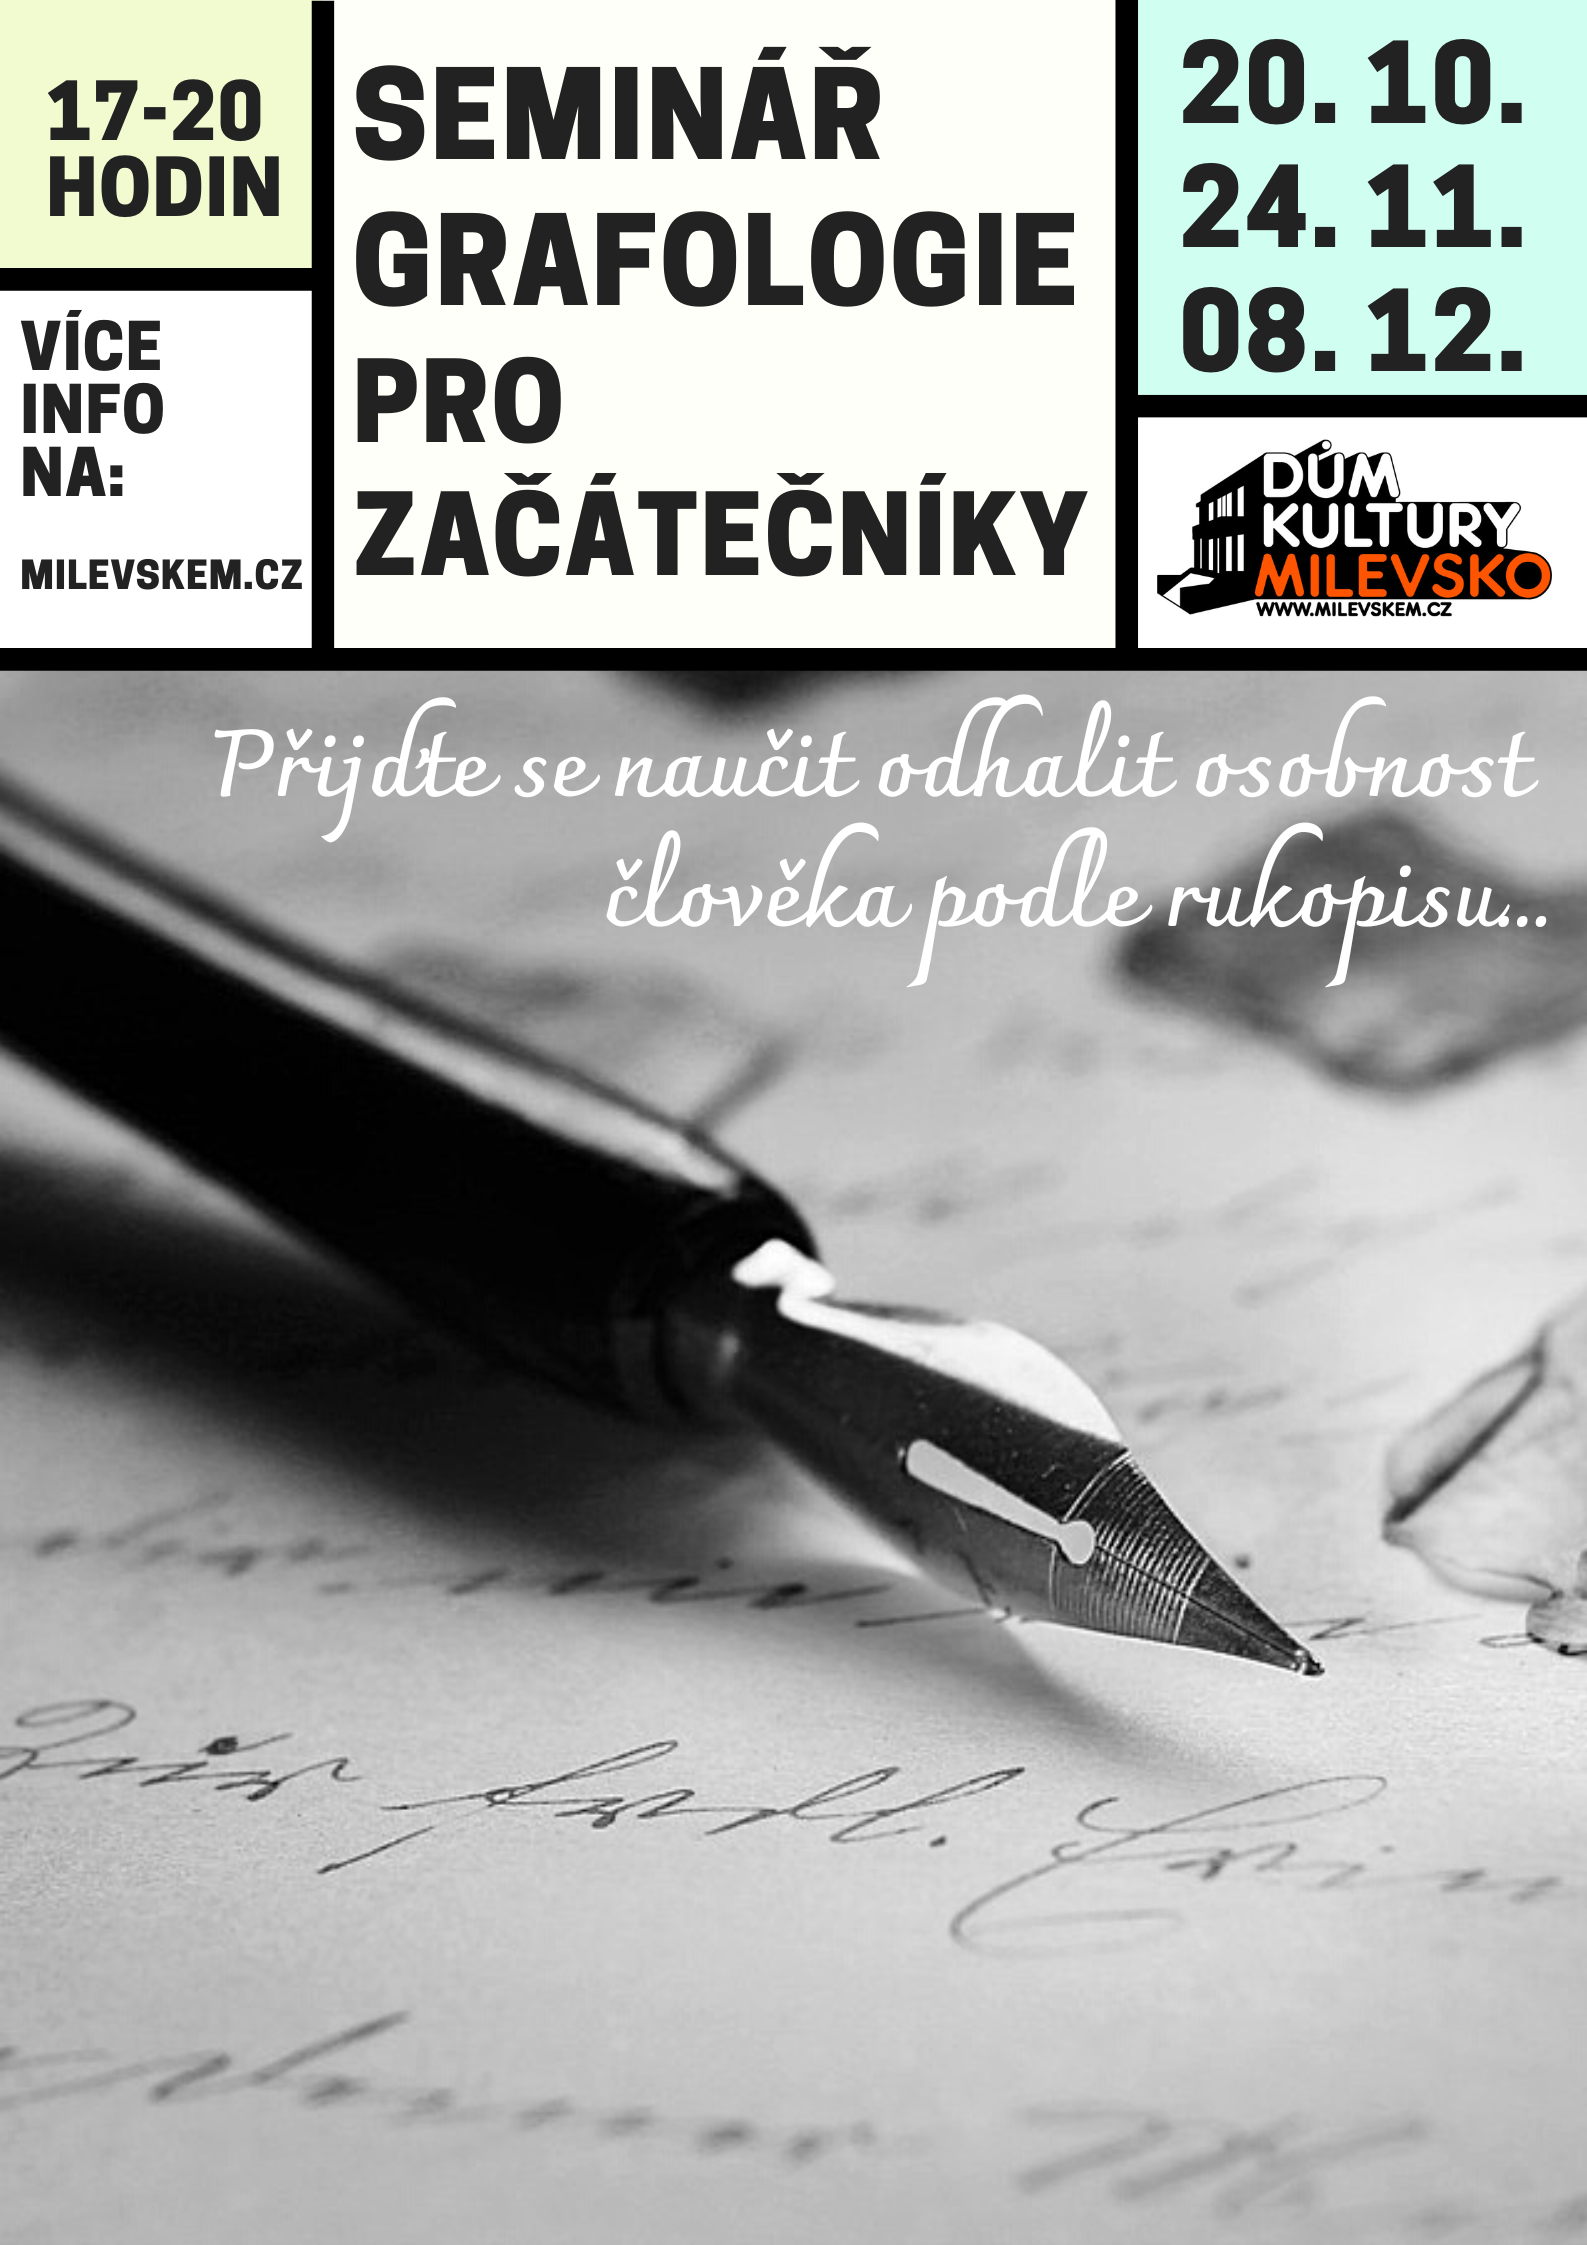 Plakát Seminář Grafologie pro začátečníky